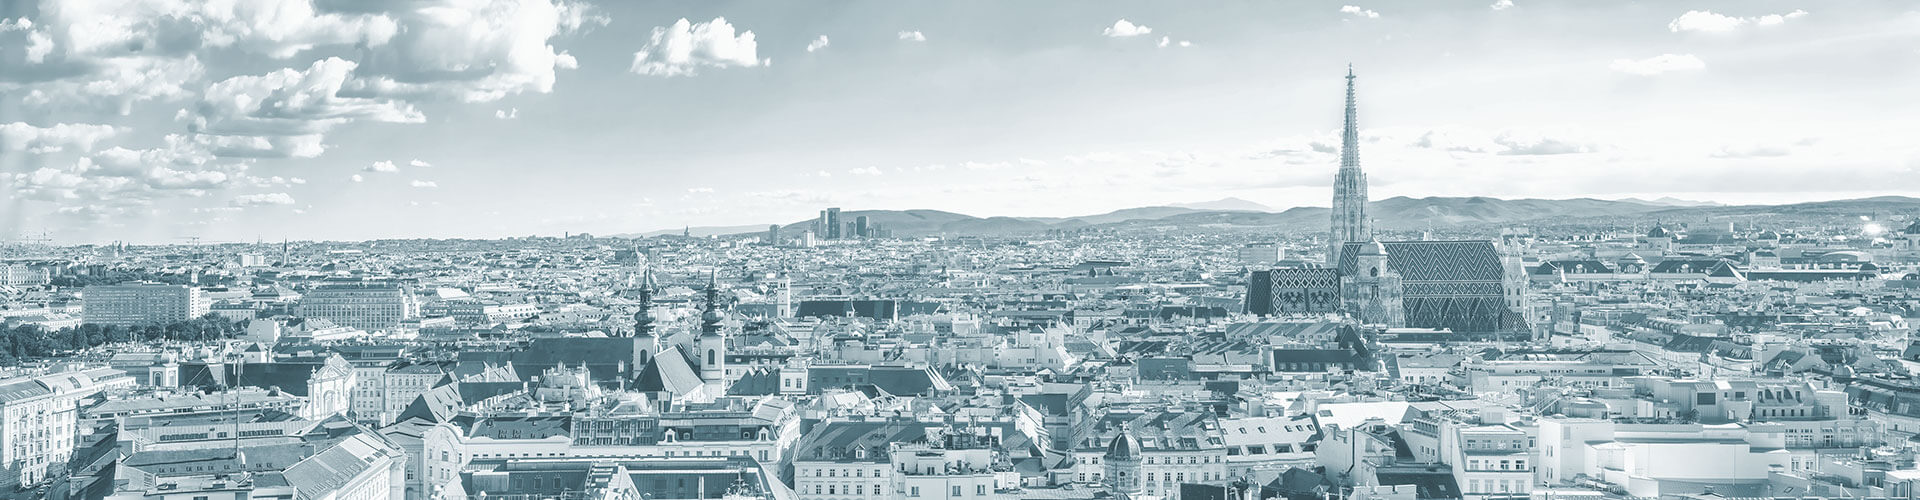 Panoramic view of Vienna city, Austria